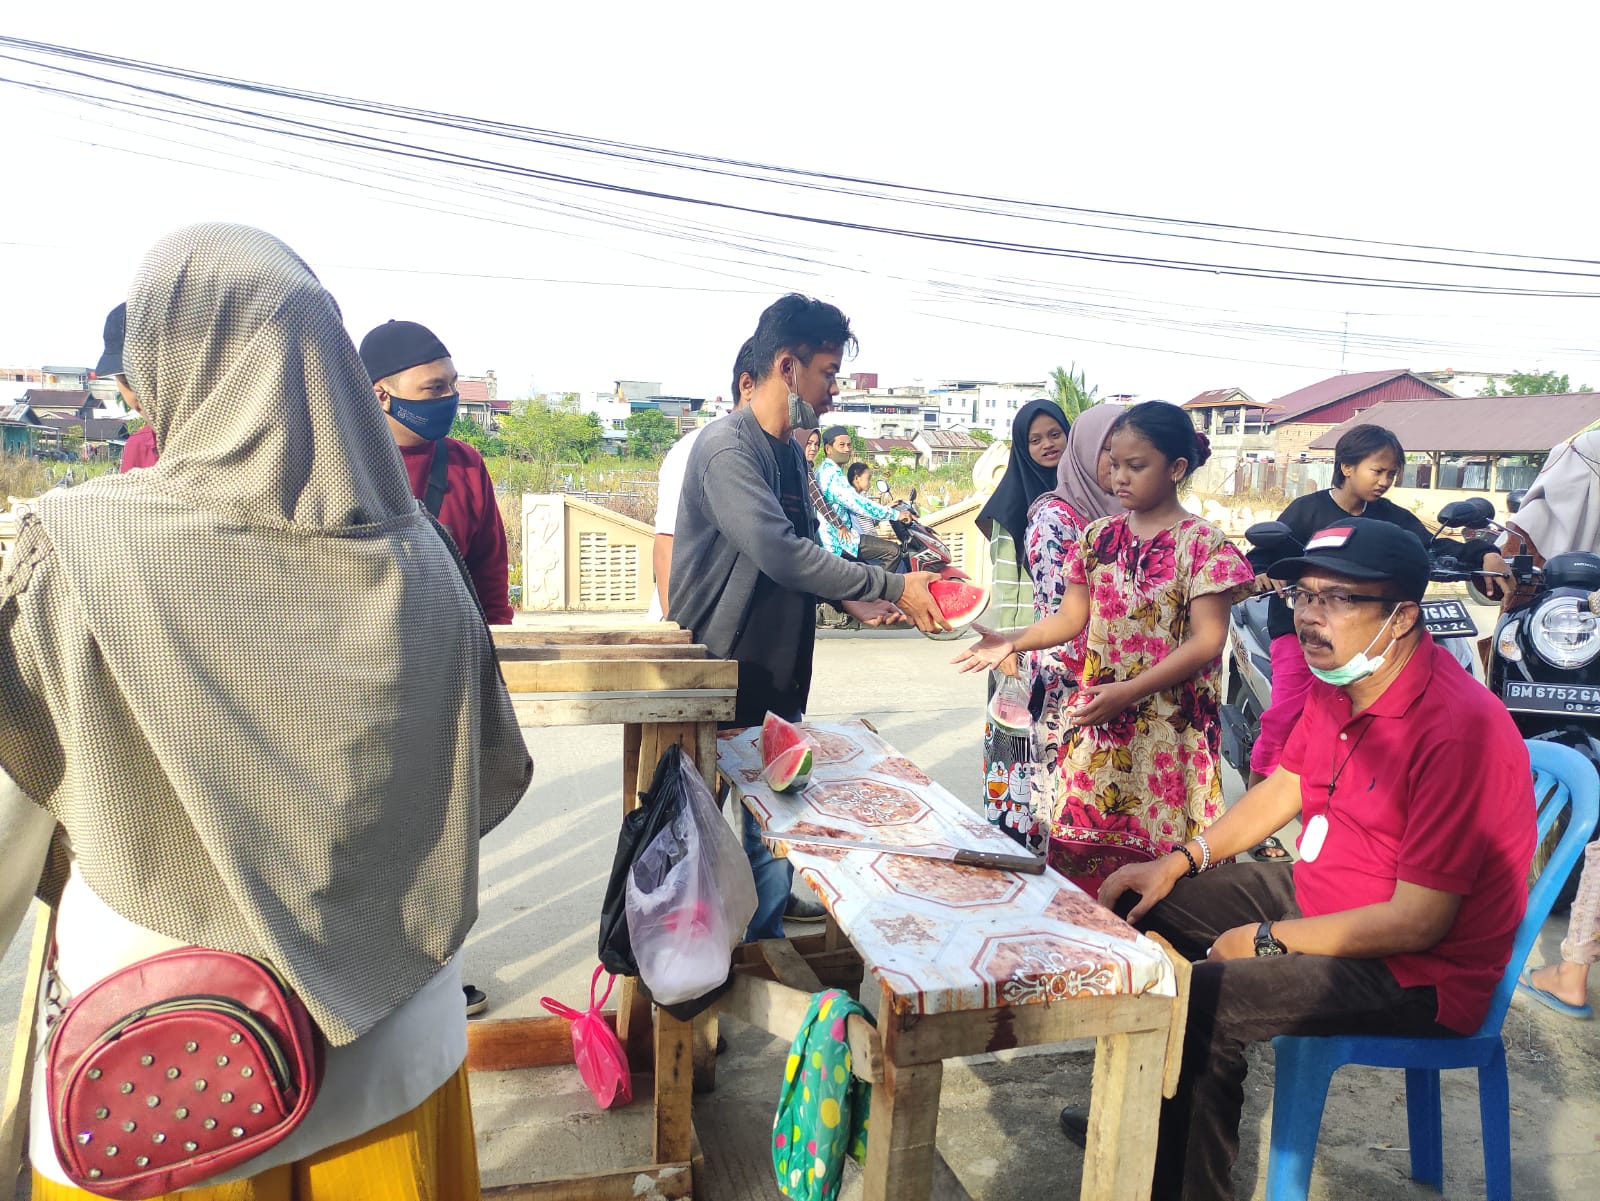 Jumat Berkah, Marlis Syarif Borong Takjil untuk di Bagi-bagikan Gratis